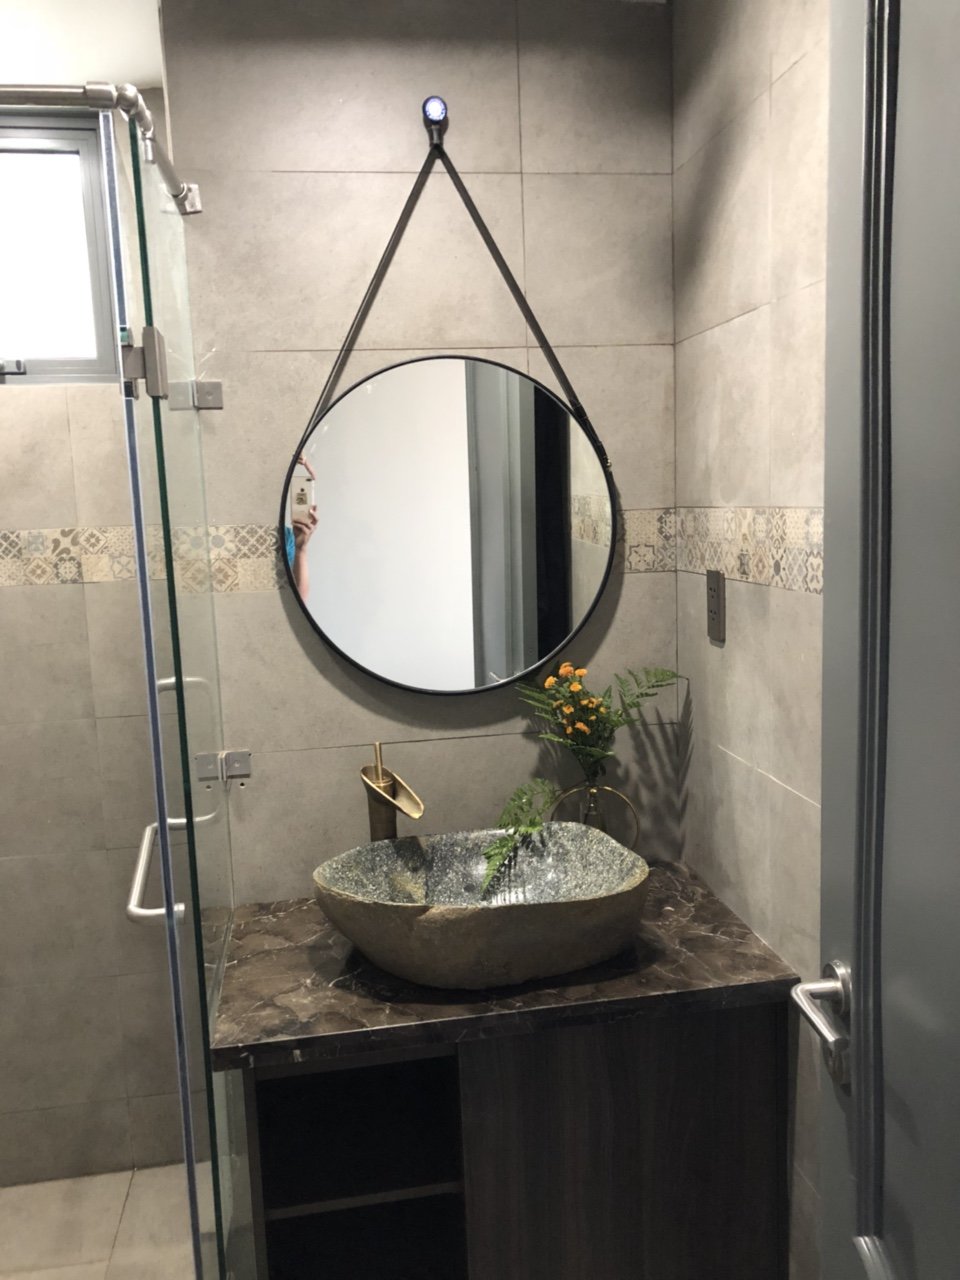 Chiếc gương tròn dây da phòng tắm cao cấp TPHCM mang đến cho bạn không gian phòng tắm tinh tế, sang trọng và hiện đại. Với kiểu dáng độc đáo cùng chất liệu da cao cấp, sản phẩm này sẽ tạo ra một điểm nhấn nổi bật cho phòng tắm của bạn. Không chỉ đẹp mắt, chiếc gương này còn có chất lượng tốt, độ sáng rõ nét, giúp bạn tạo nên một không gian phòng tắm hoàn hảo.